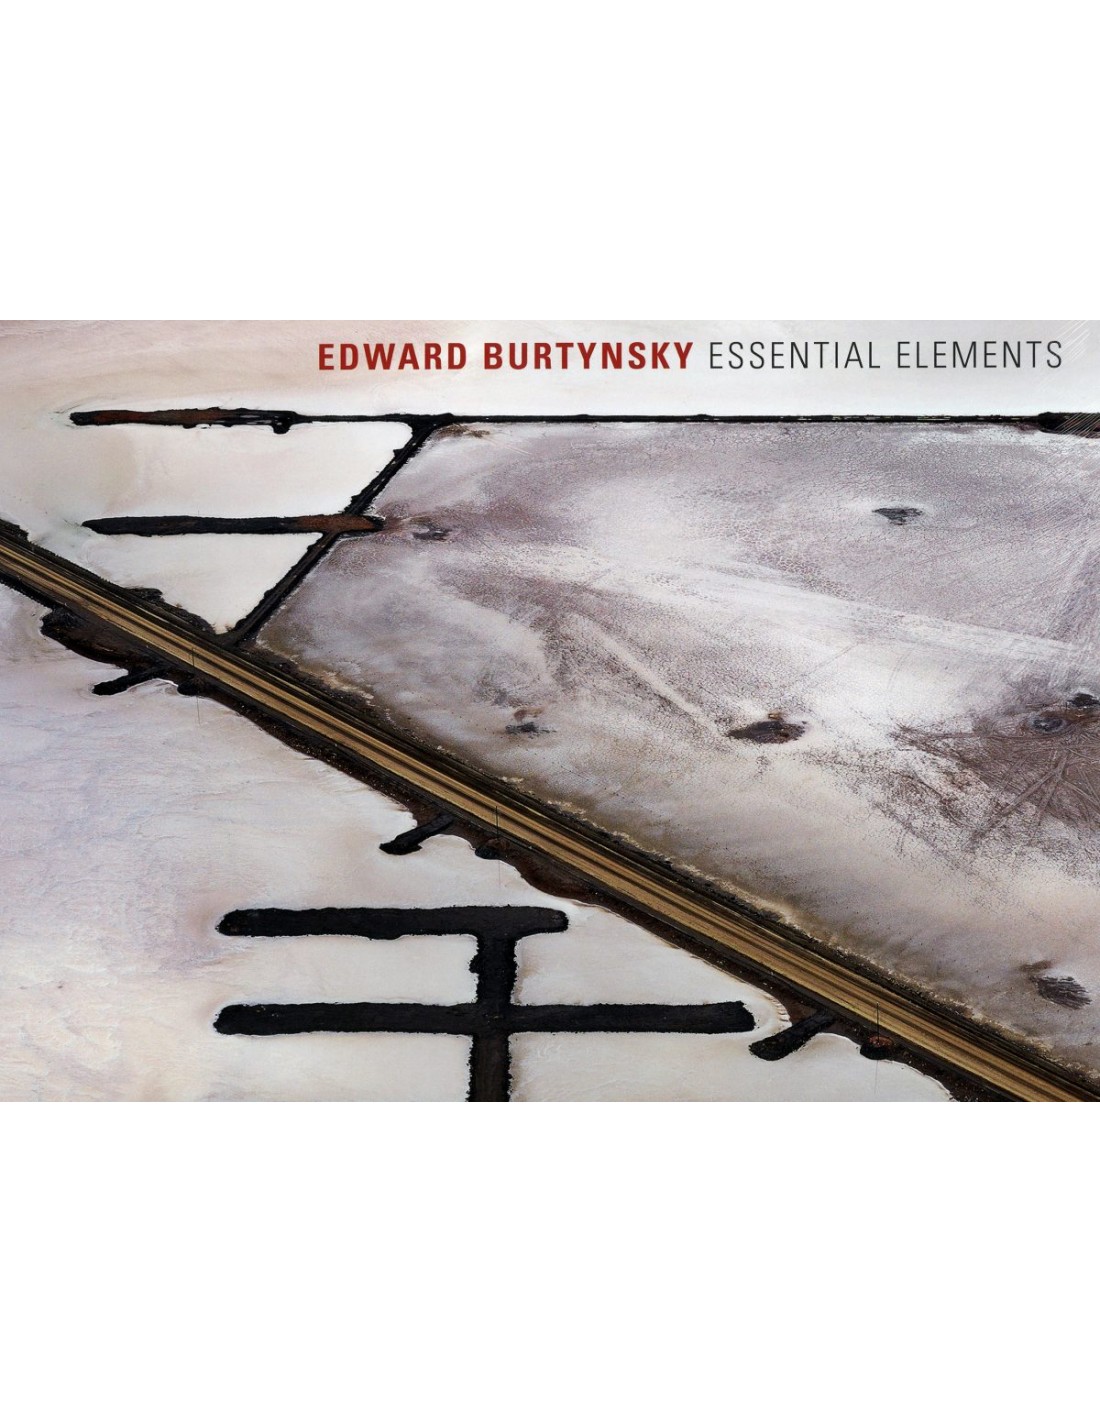 Edward Burtynsky: Essential Elements (Signed Ltd Ed #95/200 with